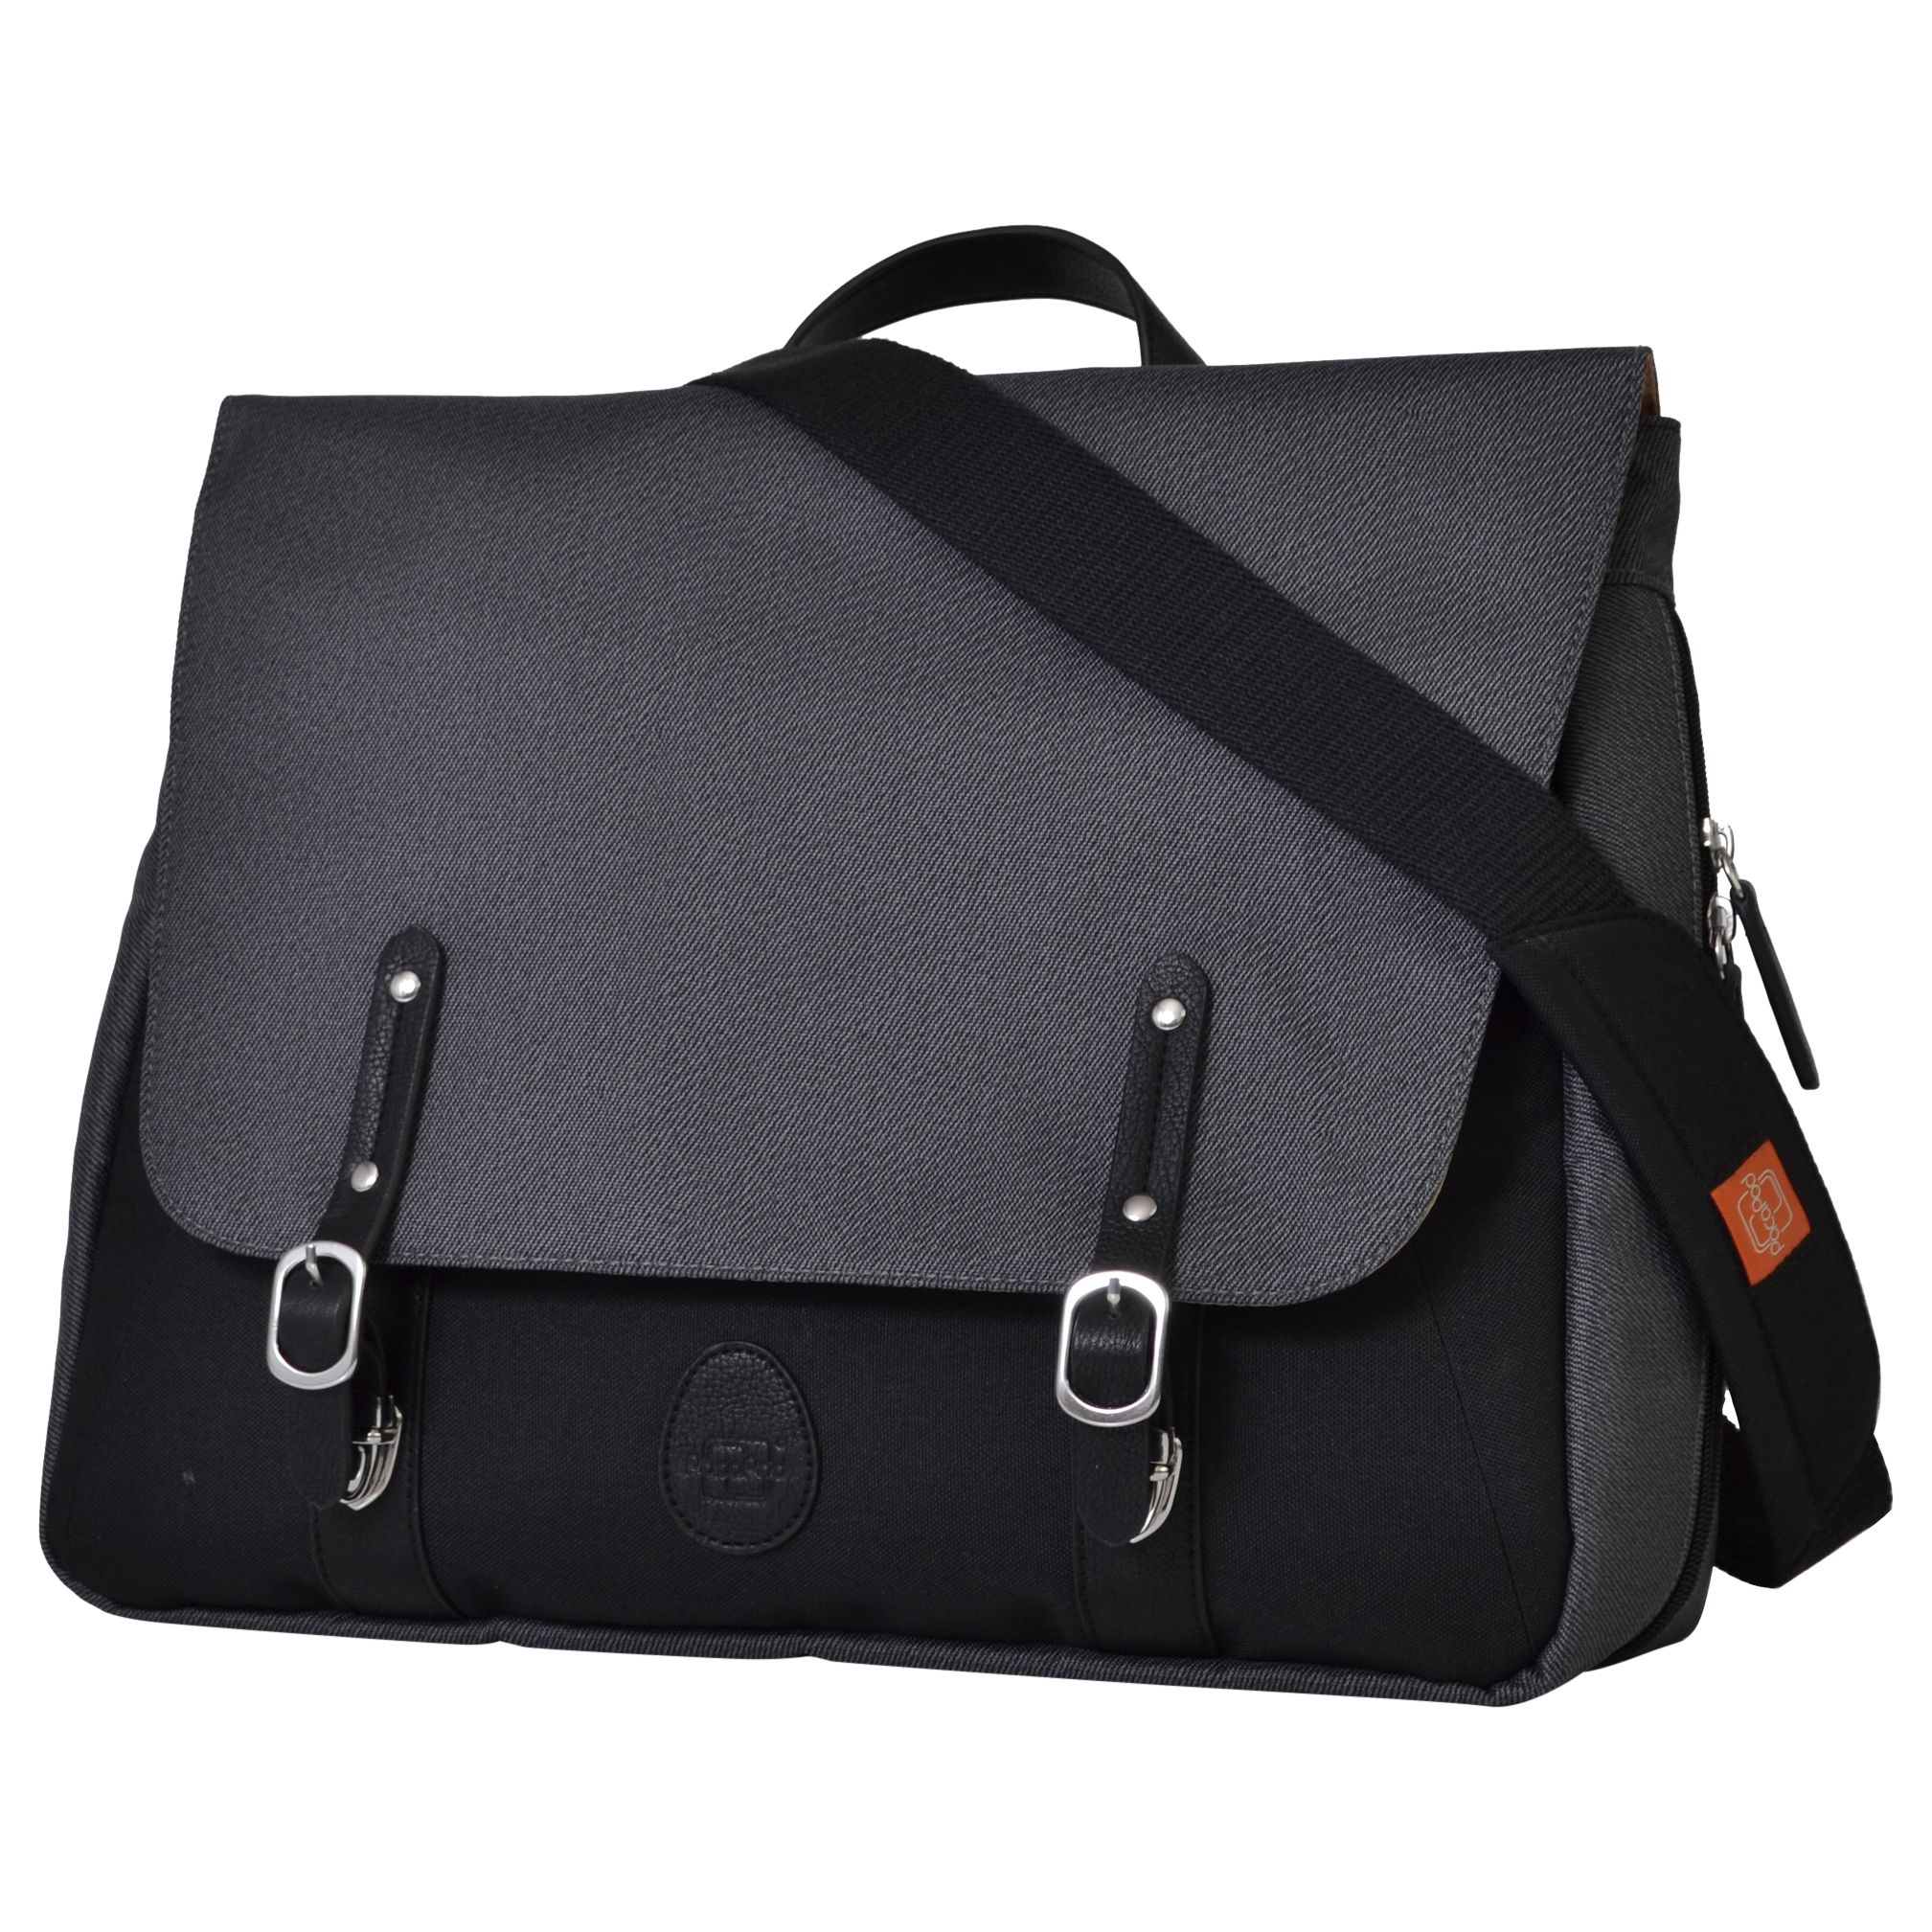 PacaPod Prescott Combi Changing Bag, Charcoal Black